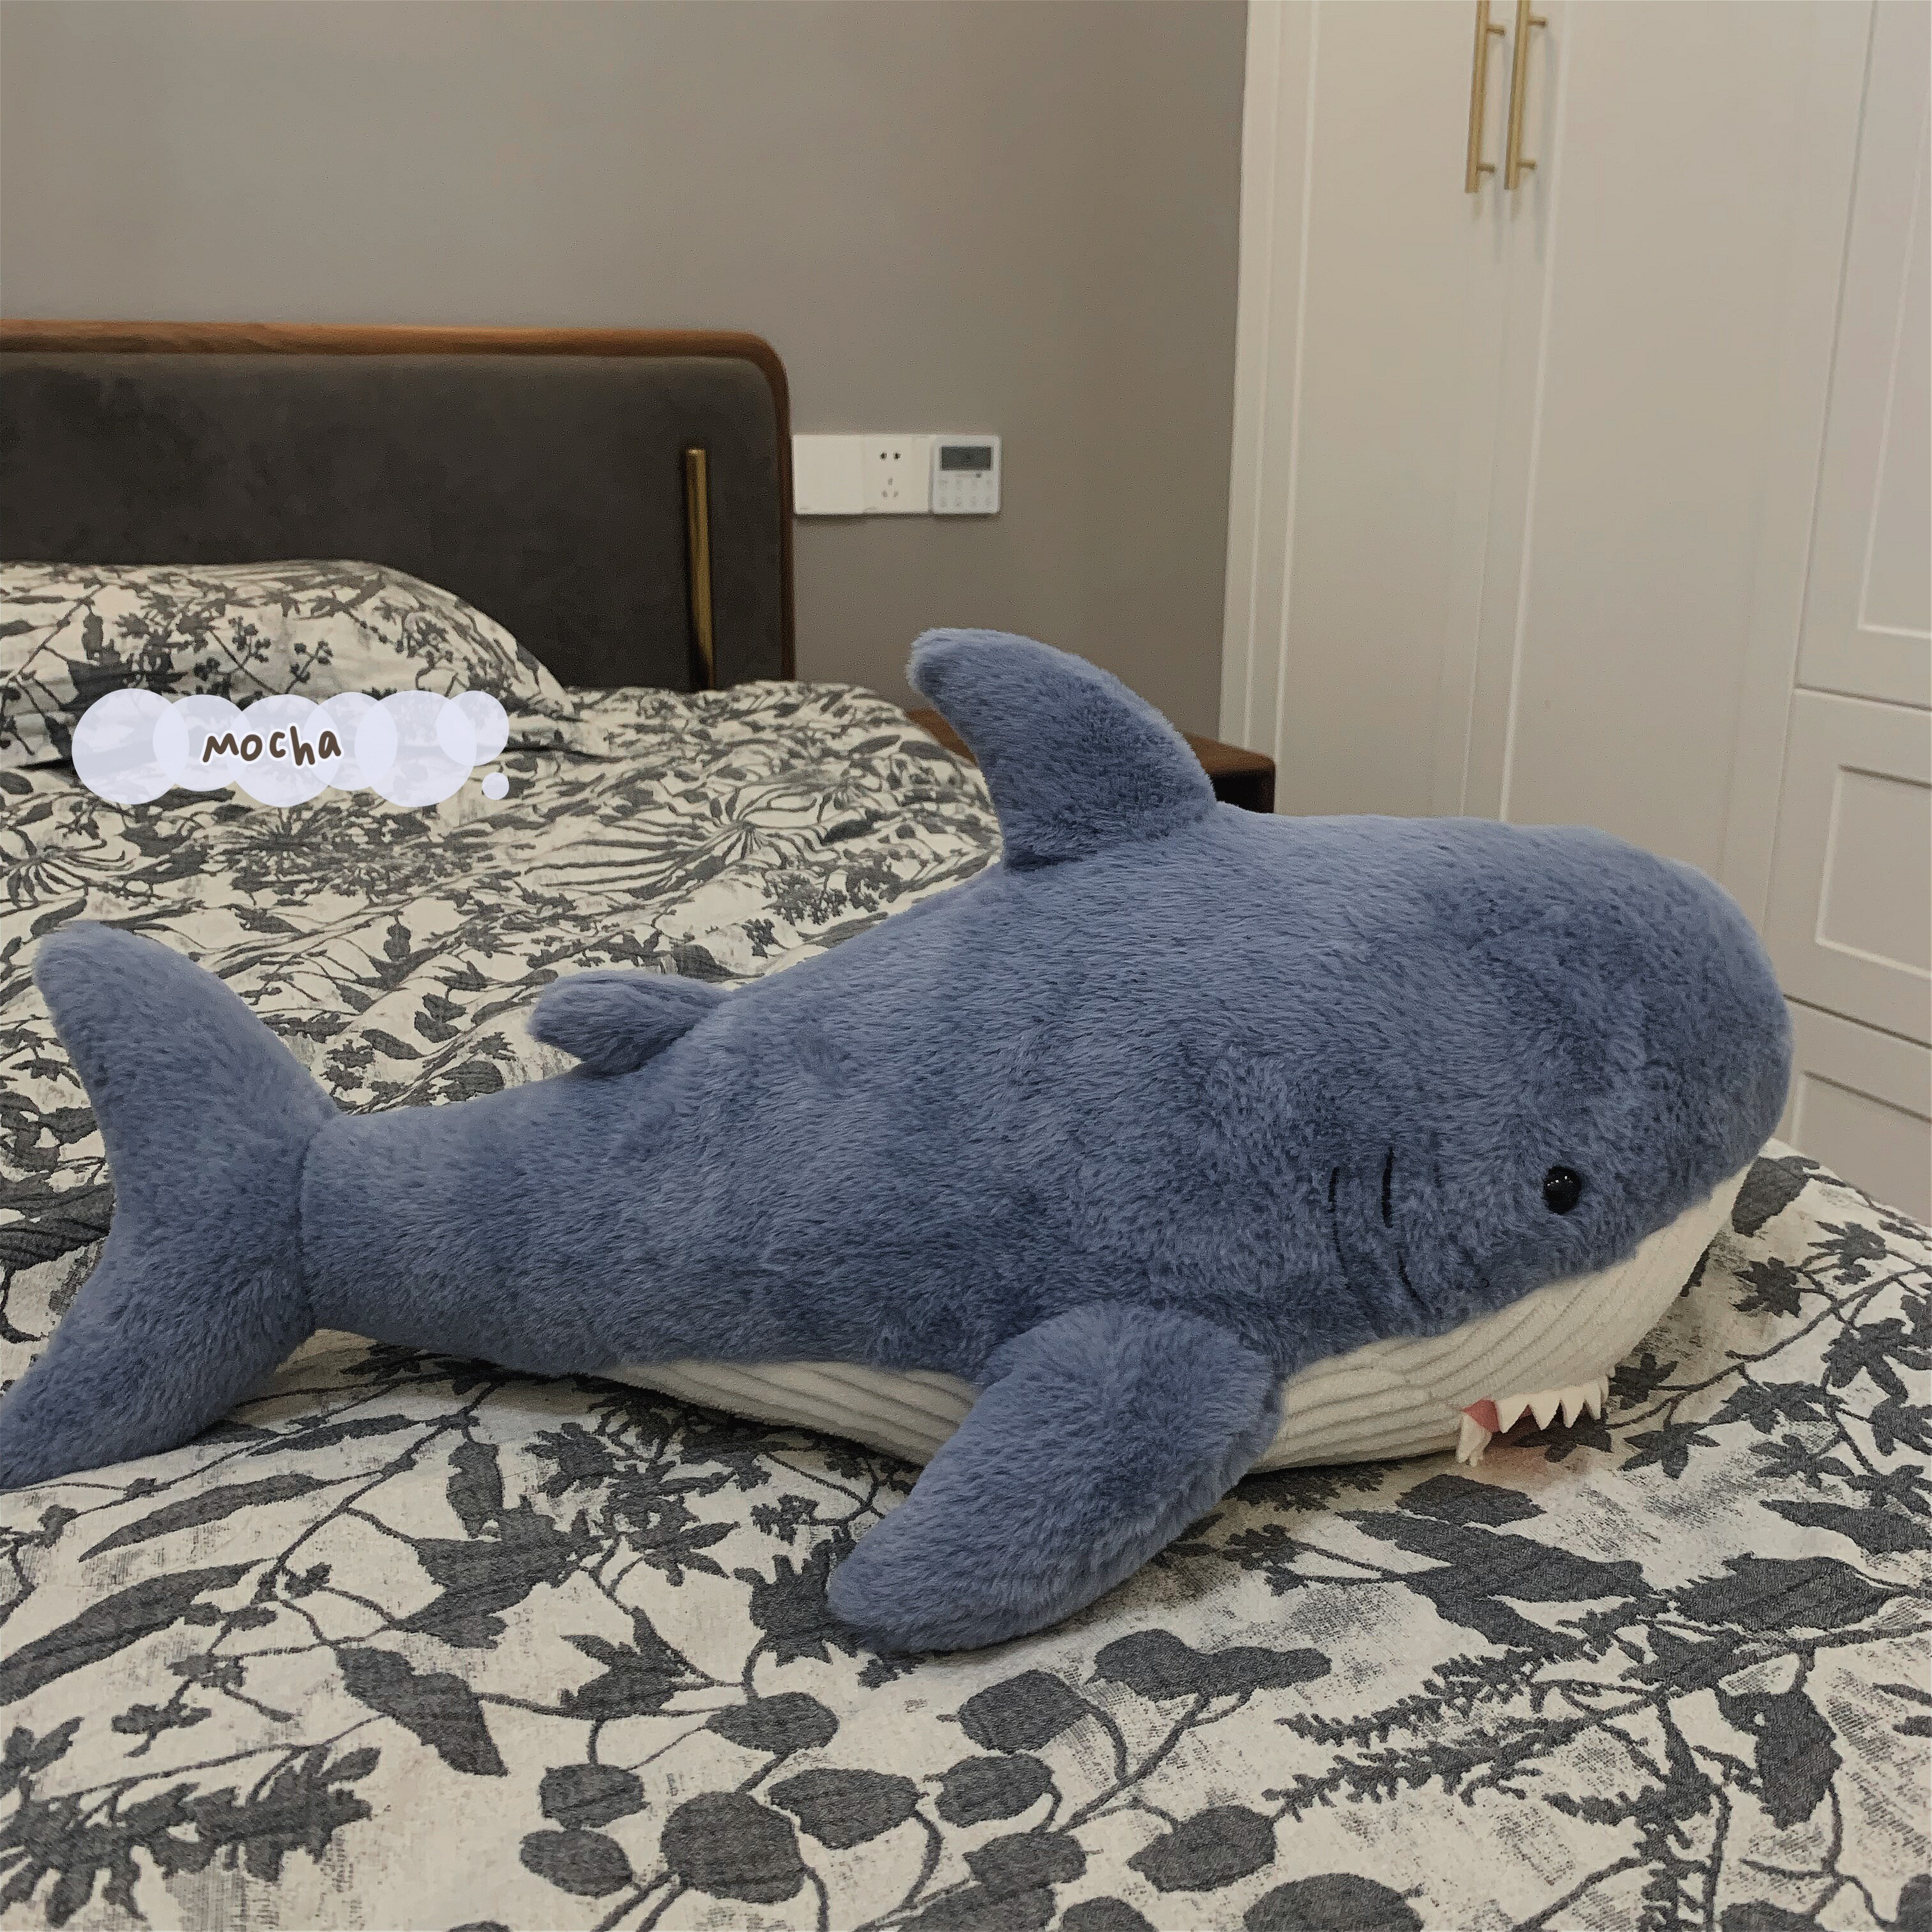 網紅可愛鯊魚睡覺抱枕毛絨玩具靠墊沙發床上抱著玩偶布娃娃禮物女